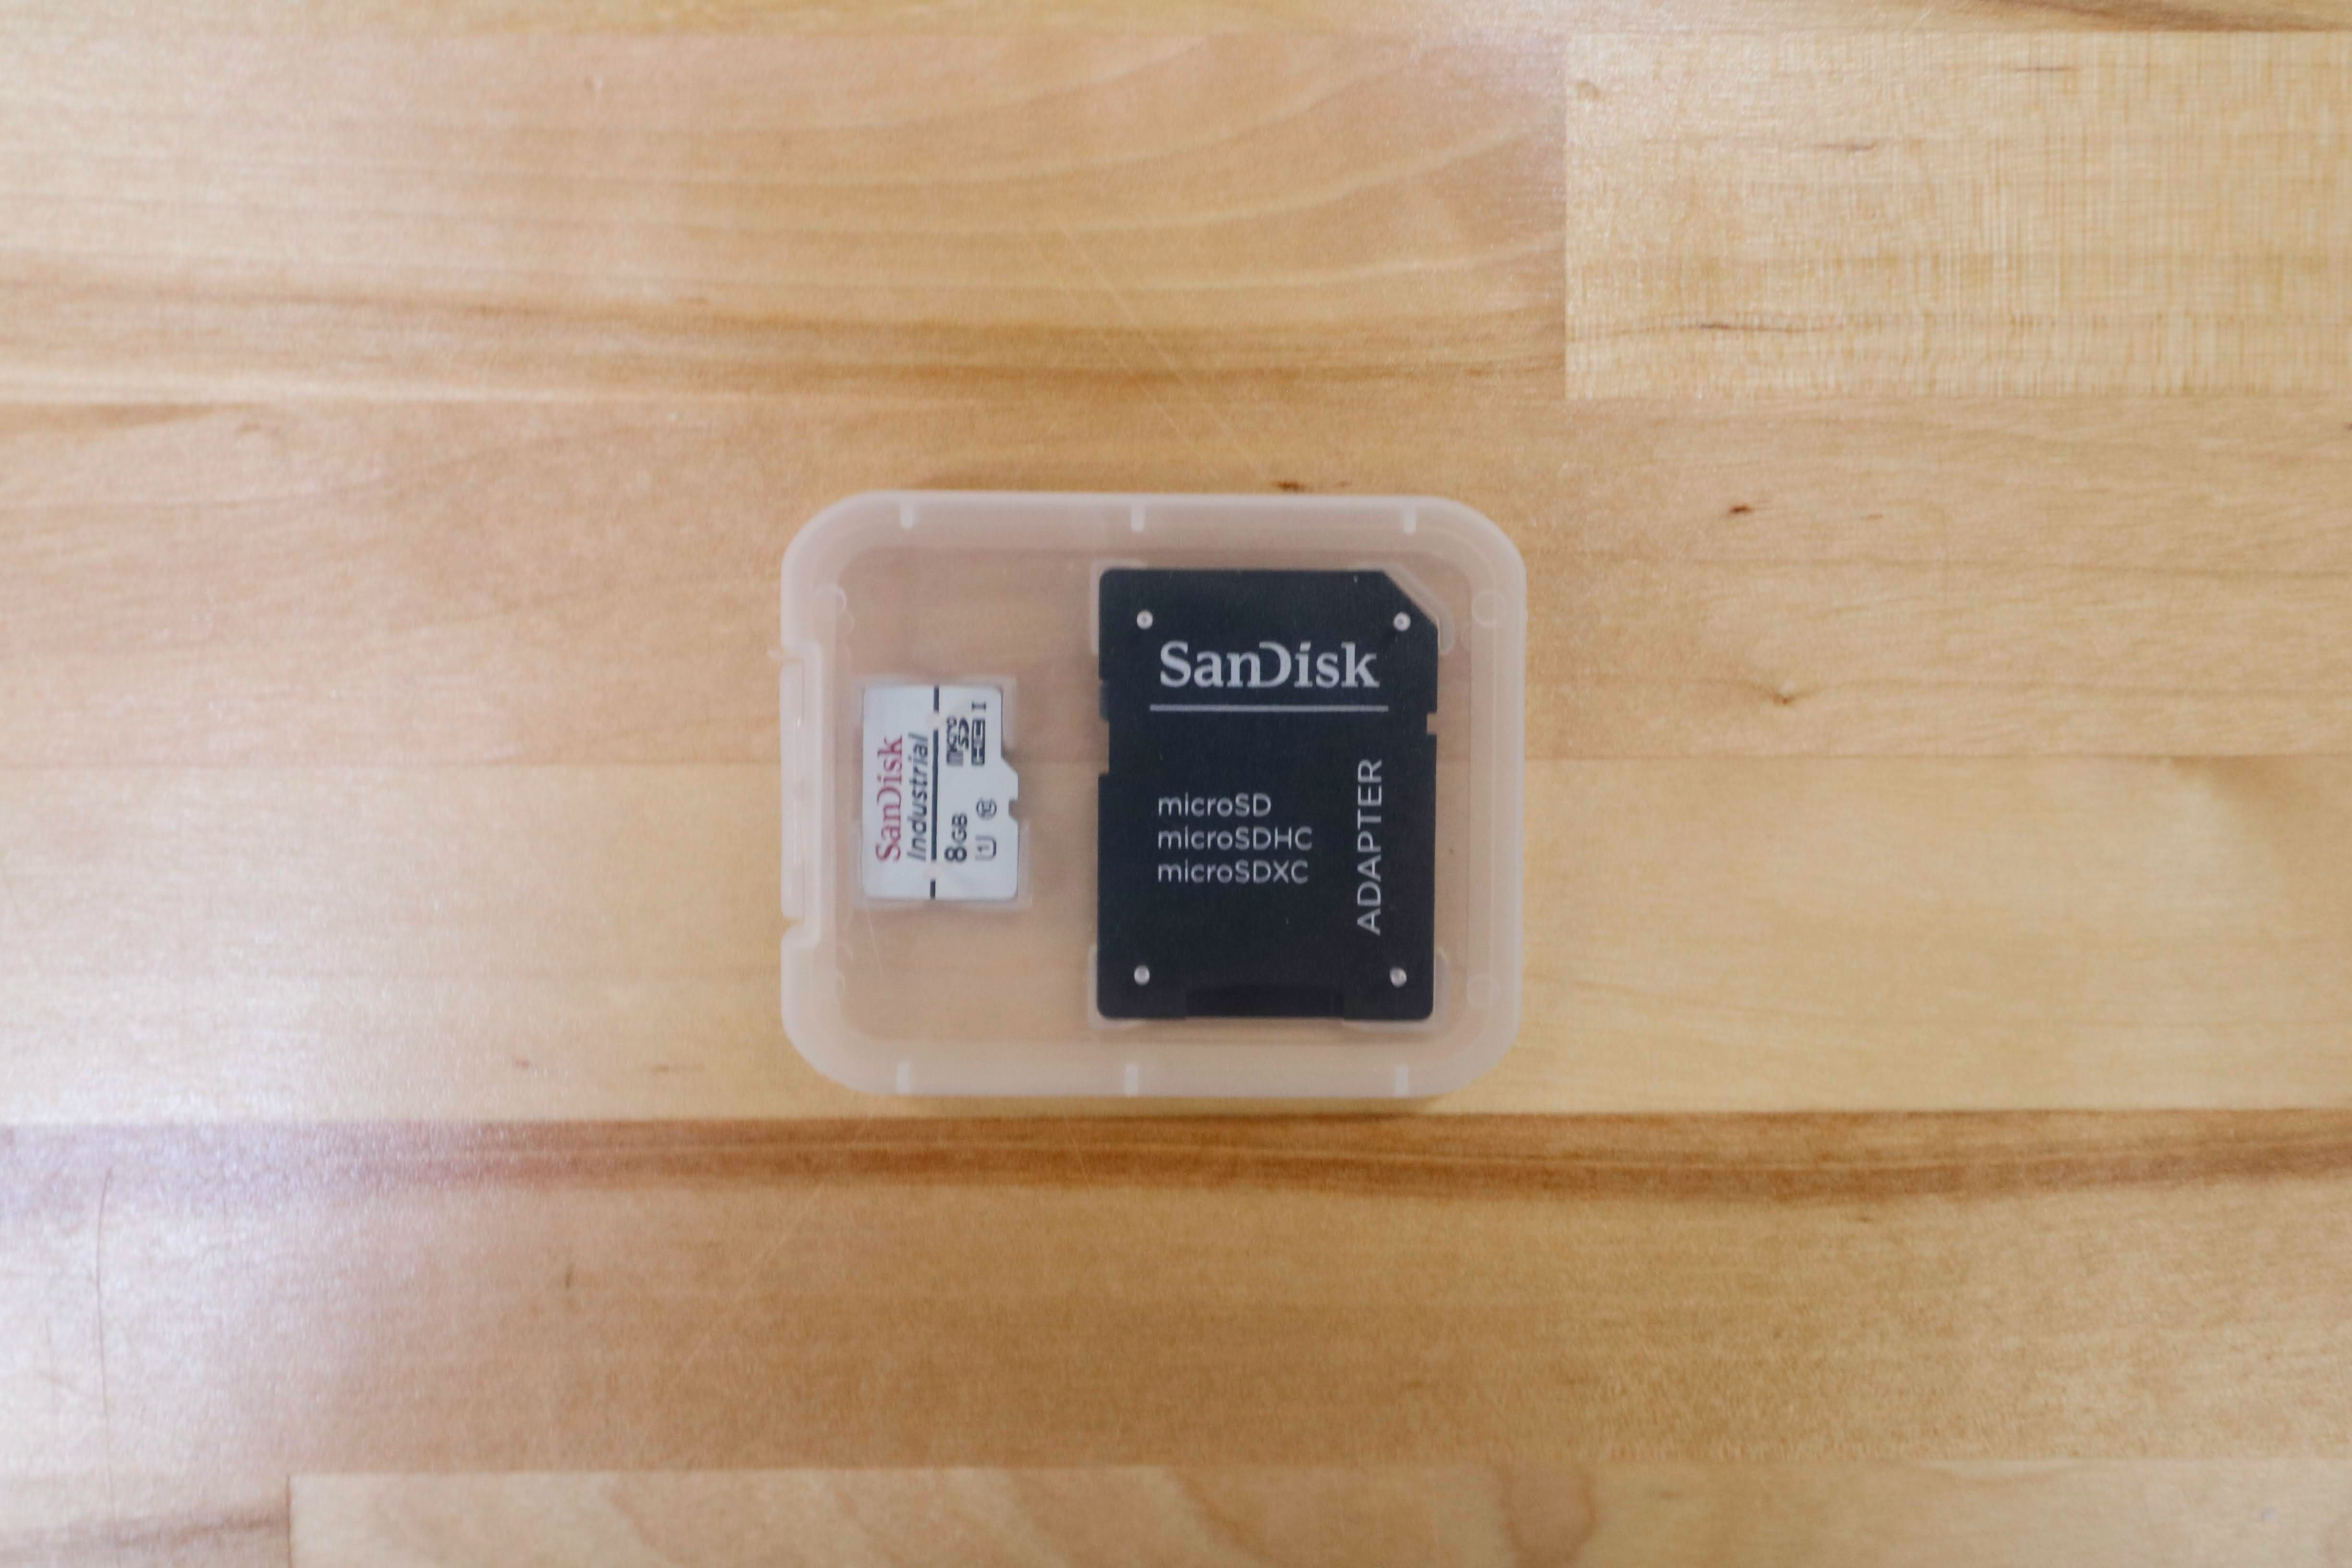 microSD card in case